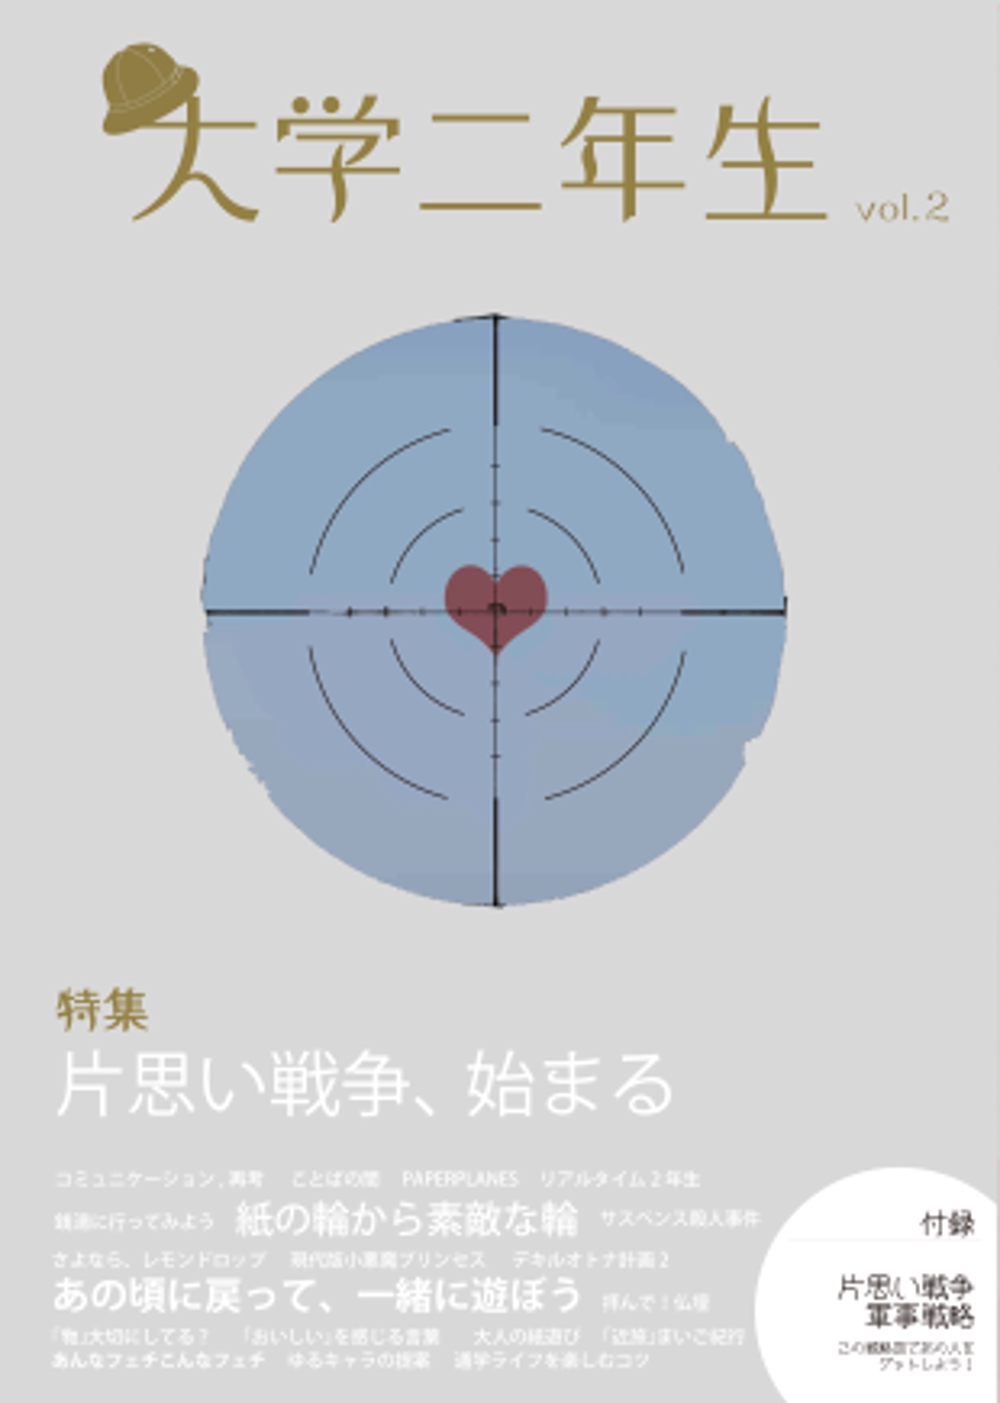 design：Magazine